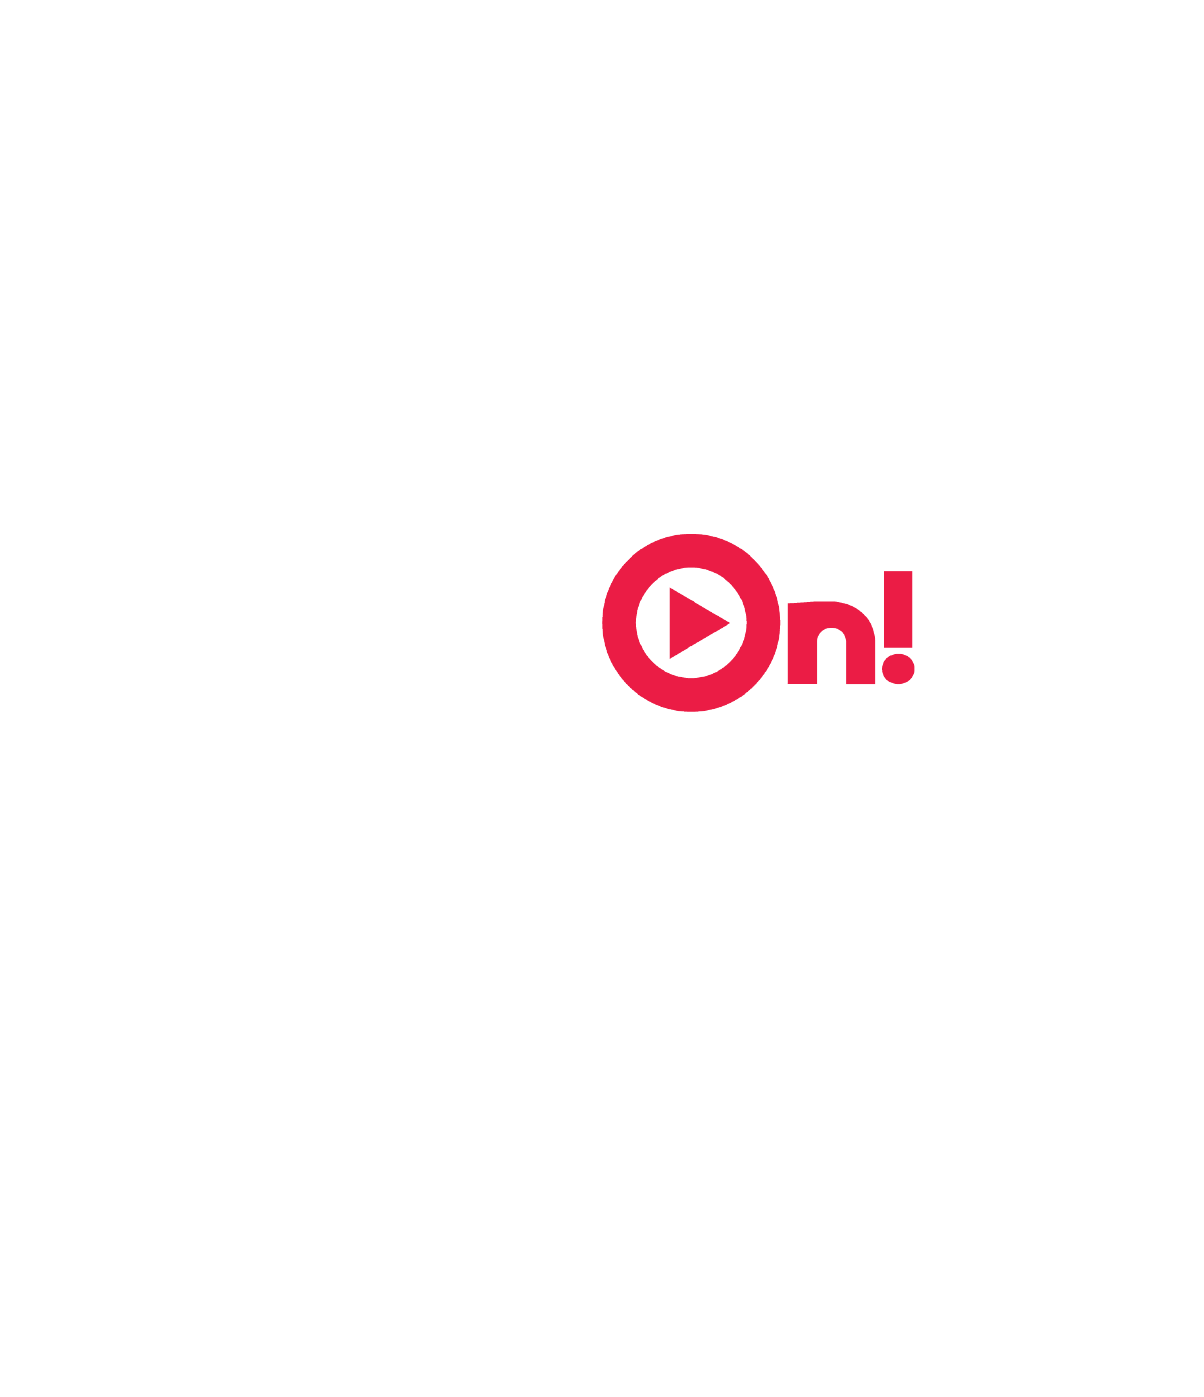 PlayOn! Sports